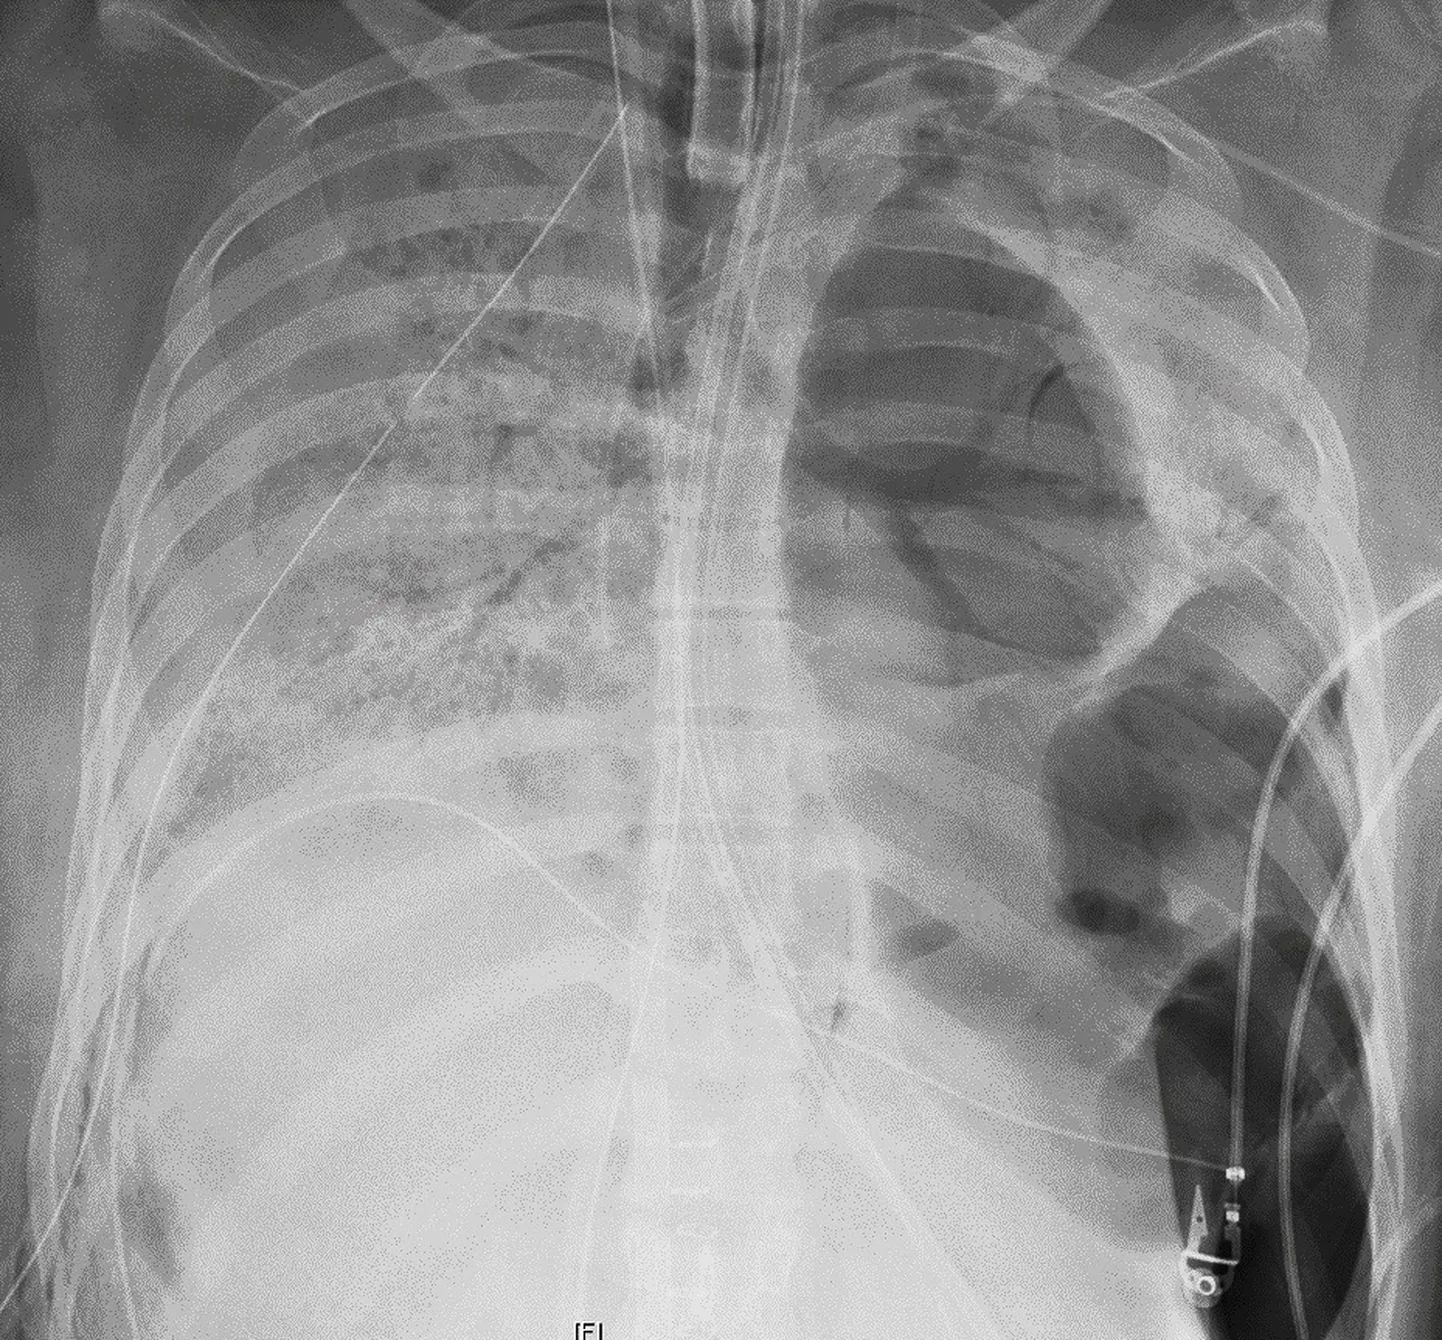 Röntgenülesvõte Covid-19 patsiendi kahjustunud kopsudest enne siirdamist.